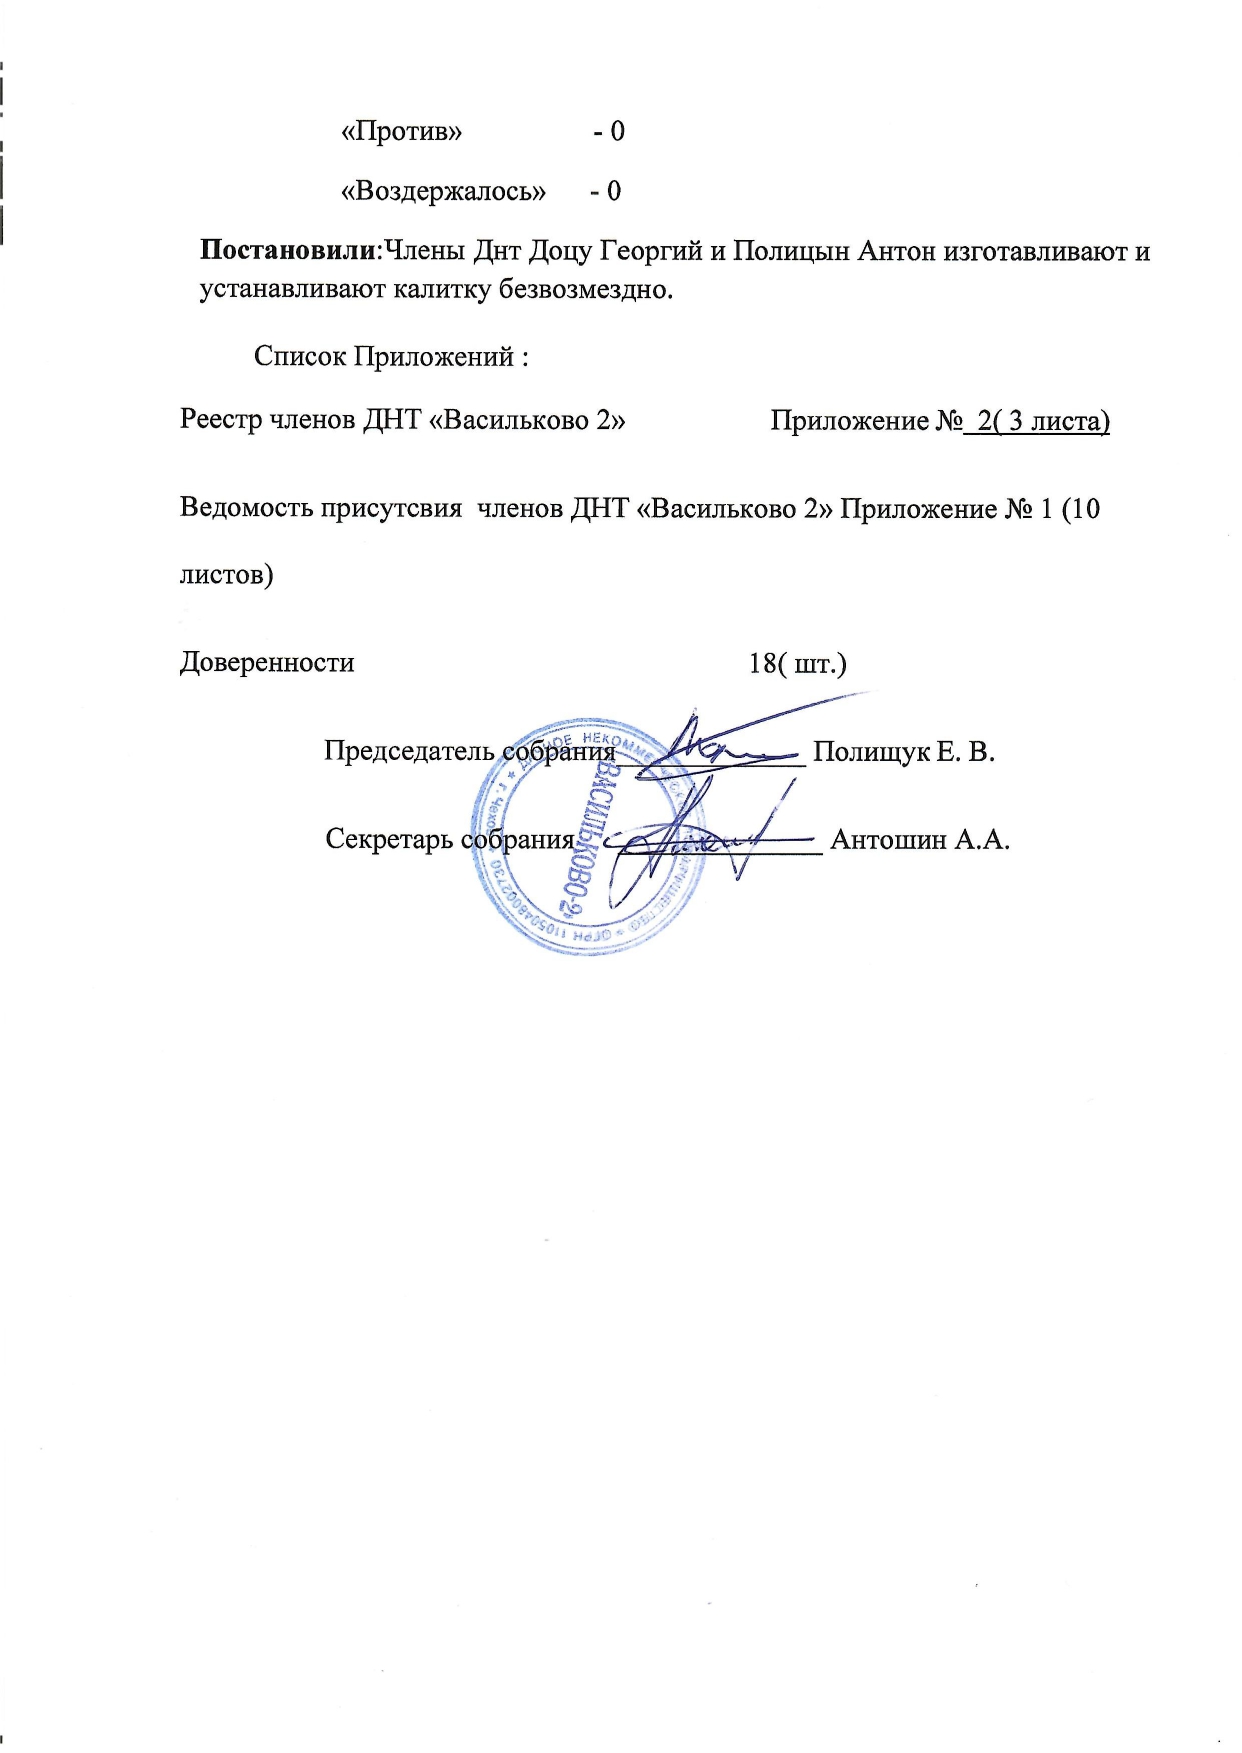 Протокол общего собрания Васильково-2 страница-3